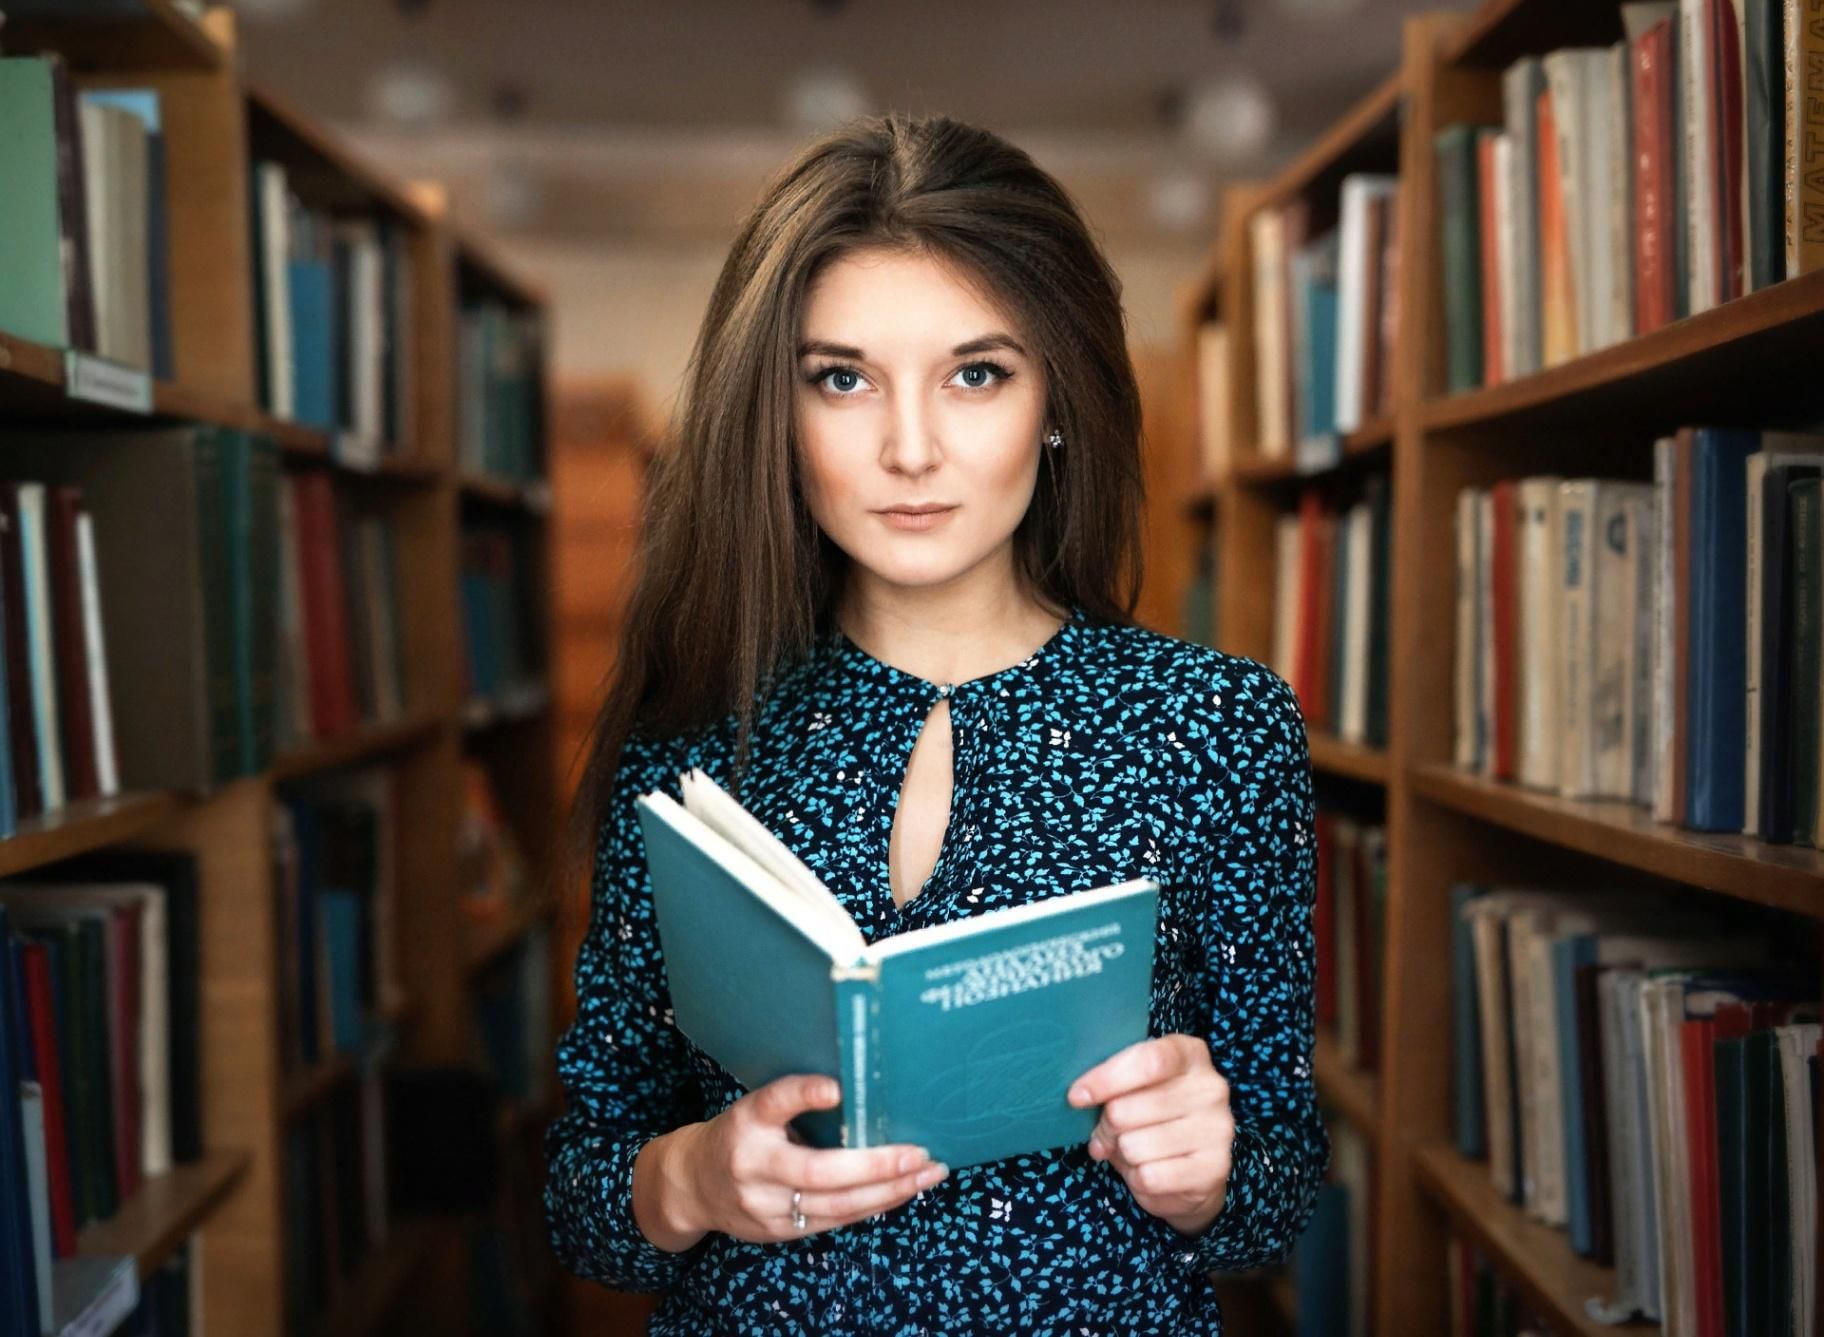 Фото с девушки с книгой